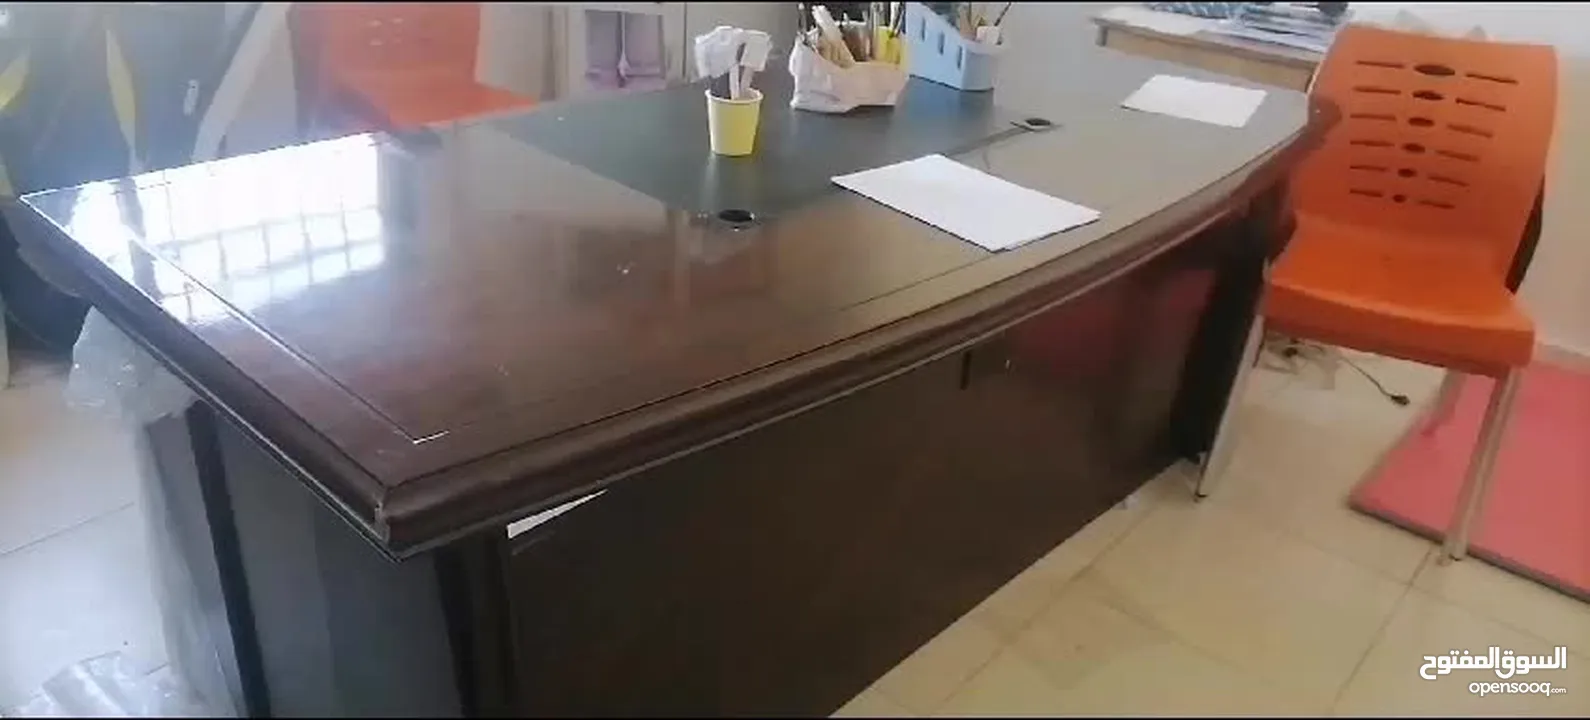 طاوله مكتب